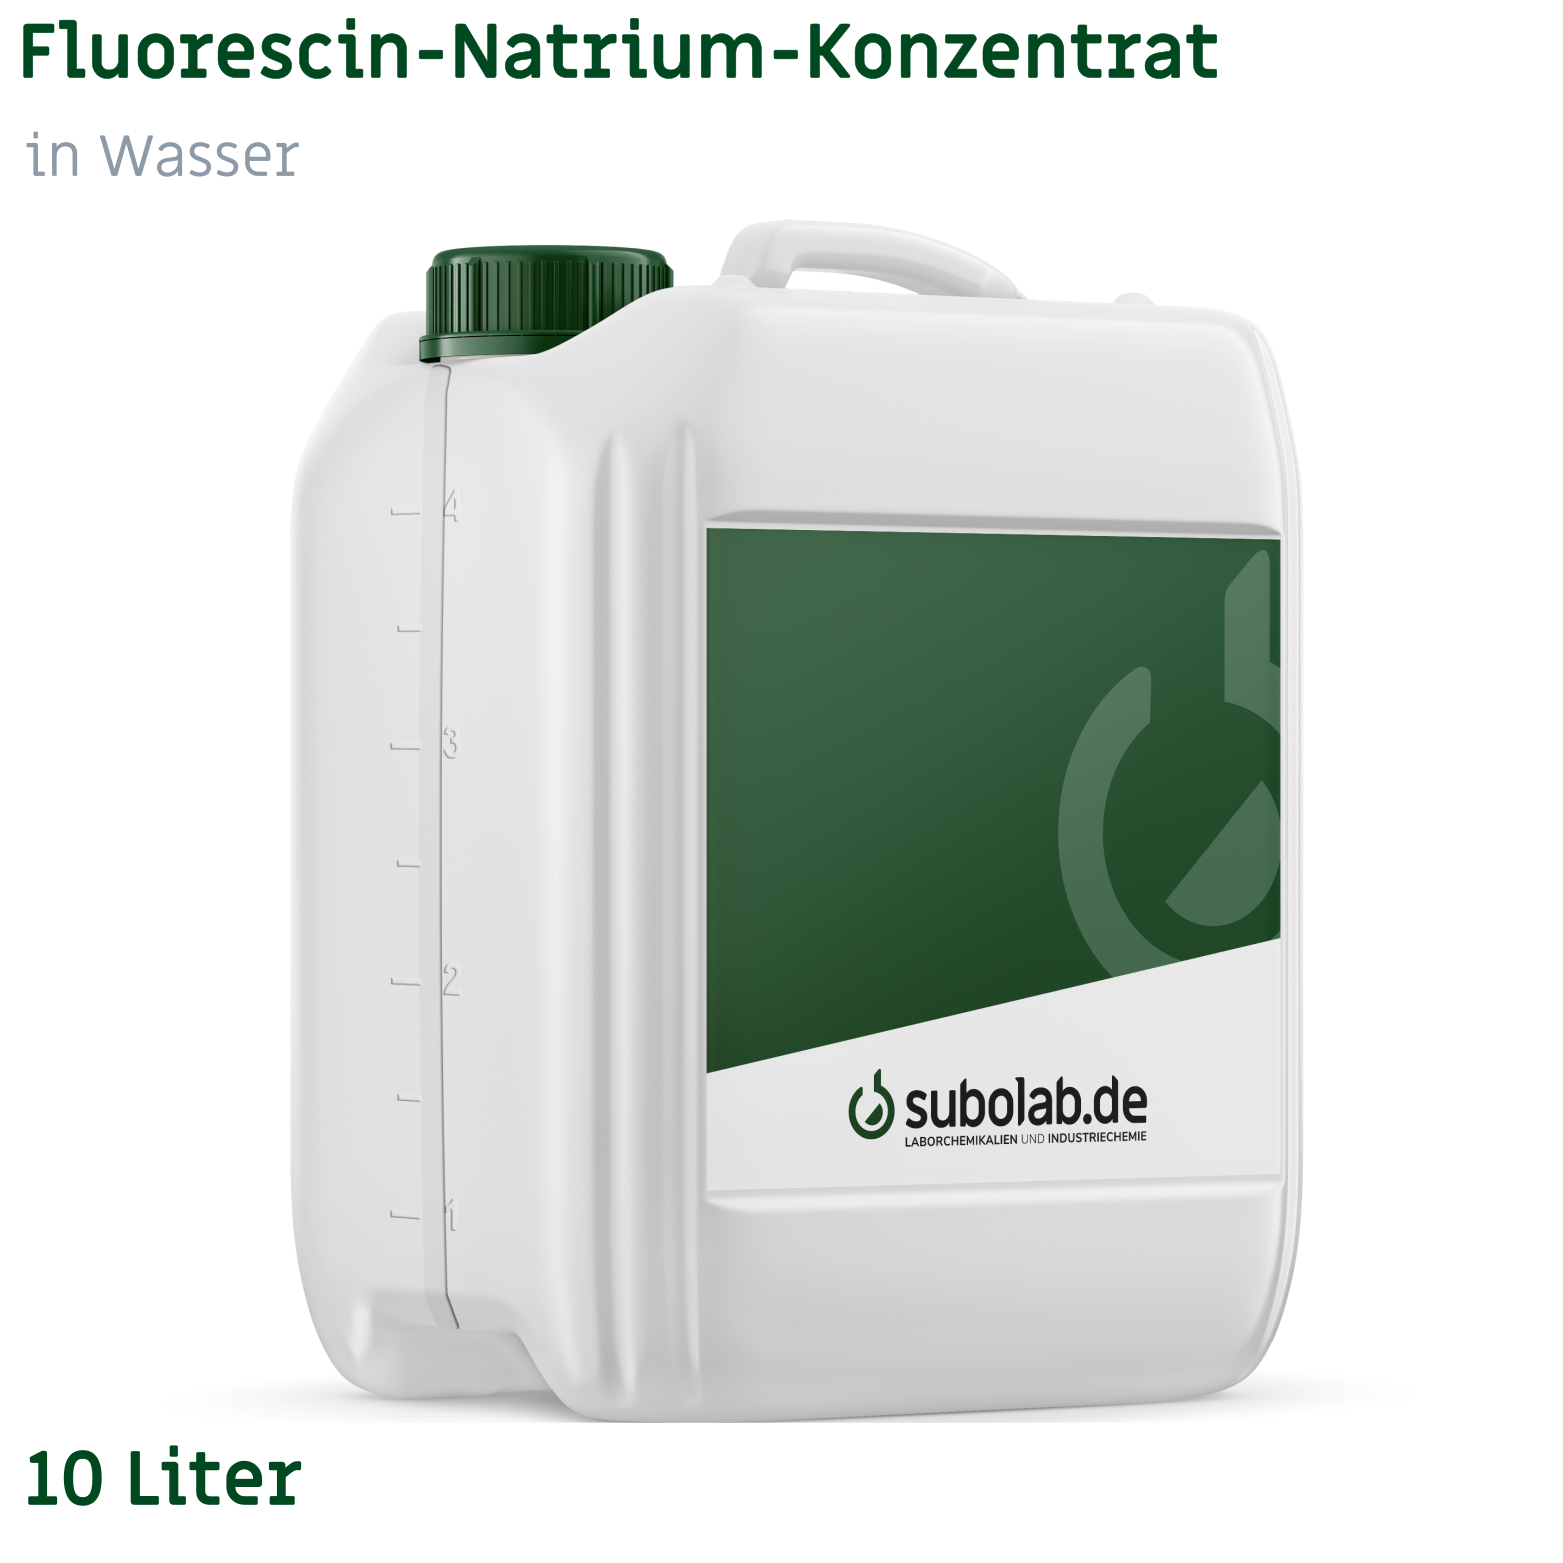 Bild von Fluorescin-Natrium-Konzentrat in Wasser (2,5 kg gelöst in Wasser) (10 Liter)